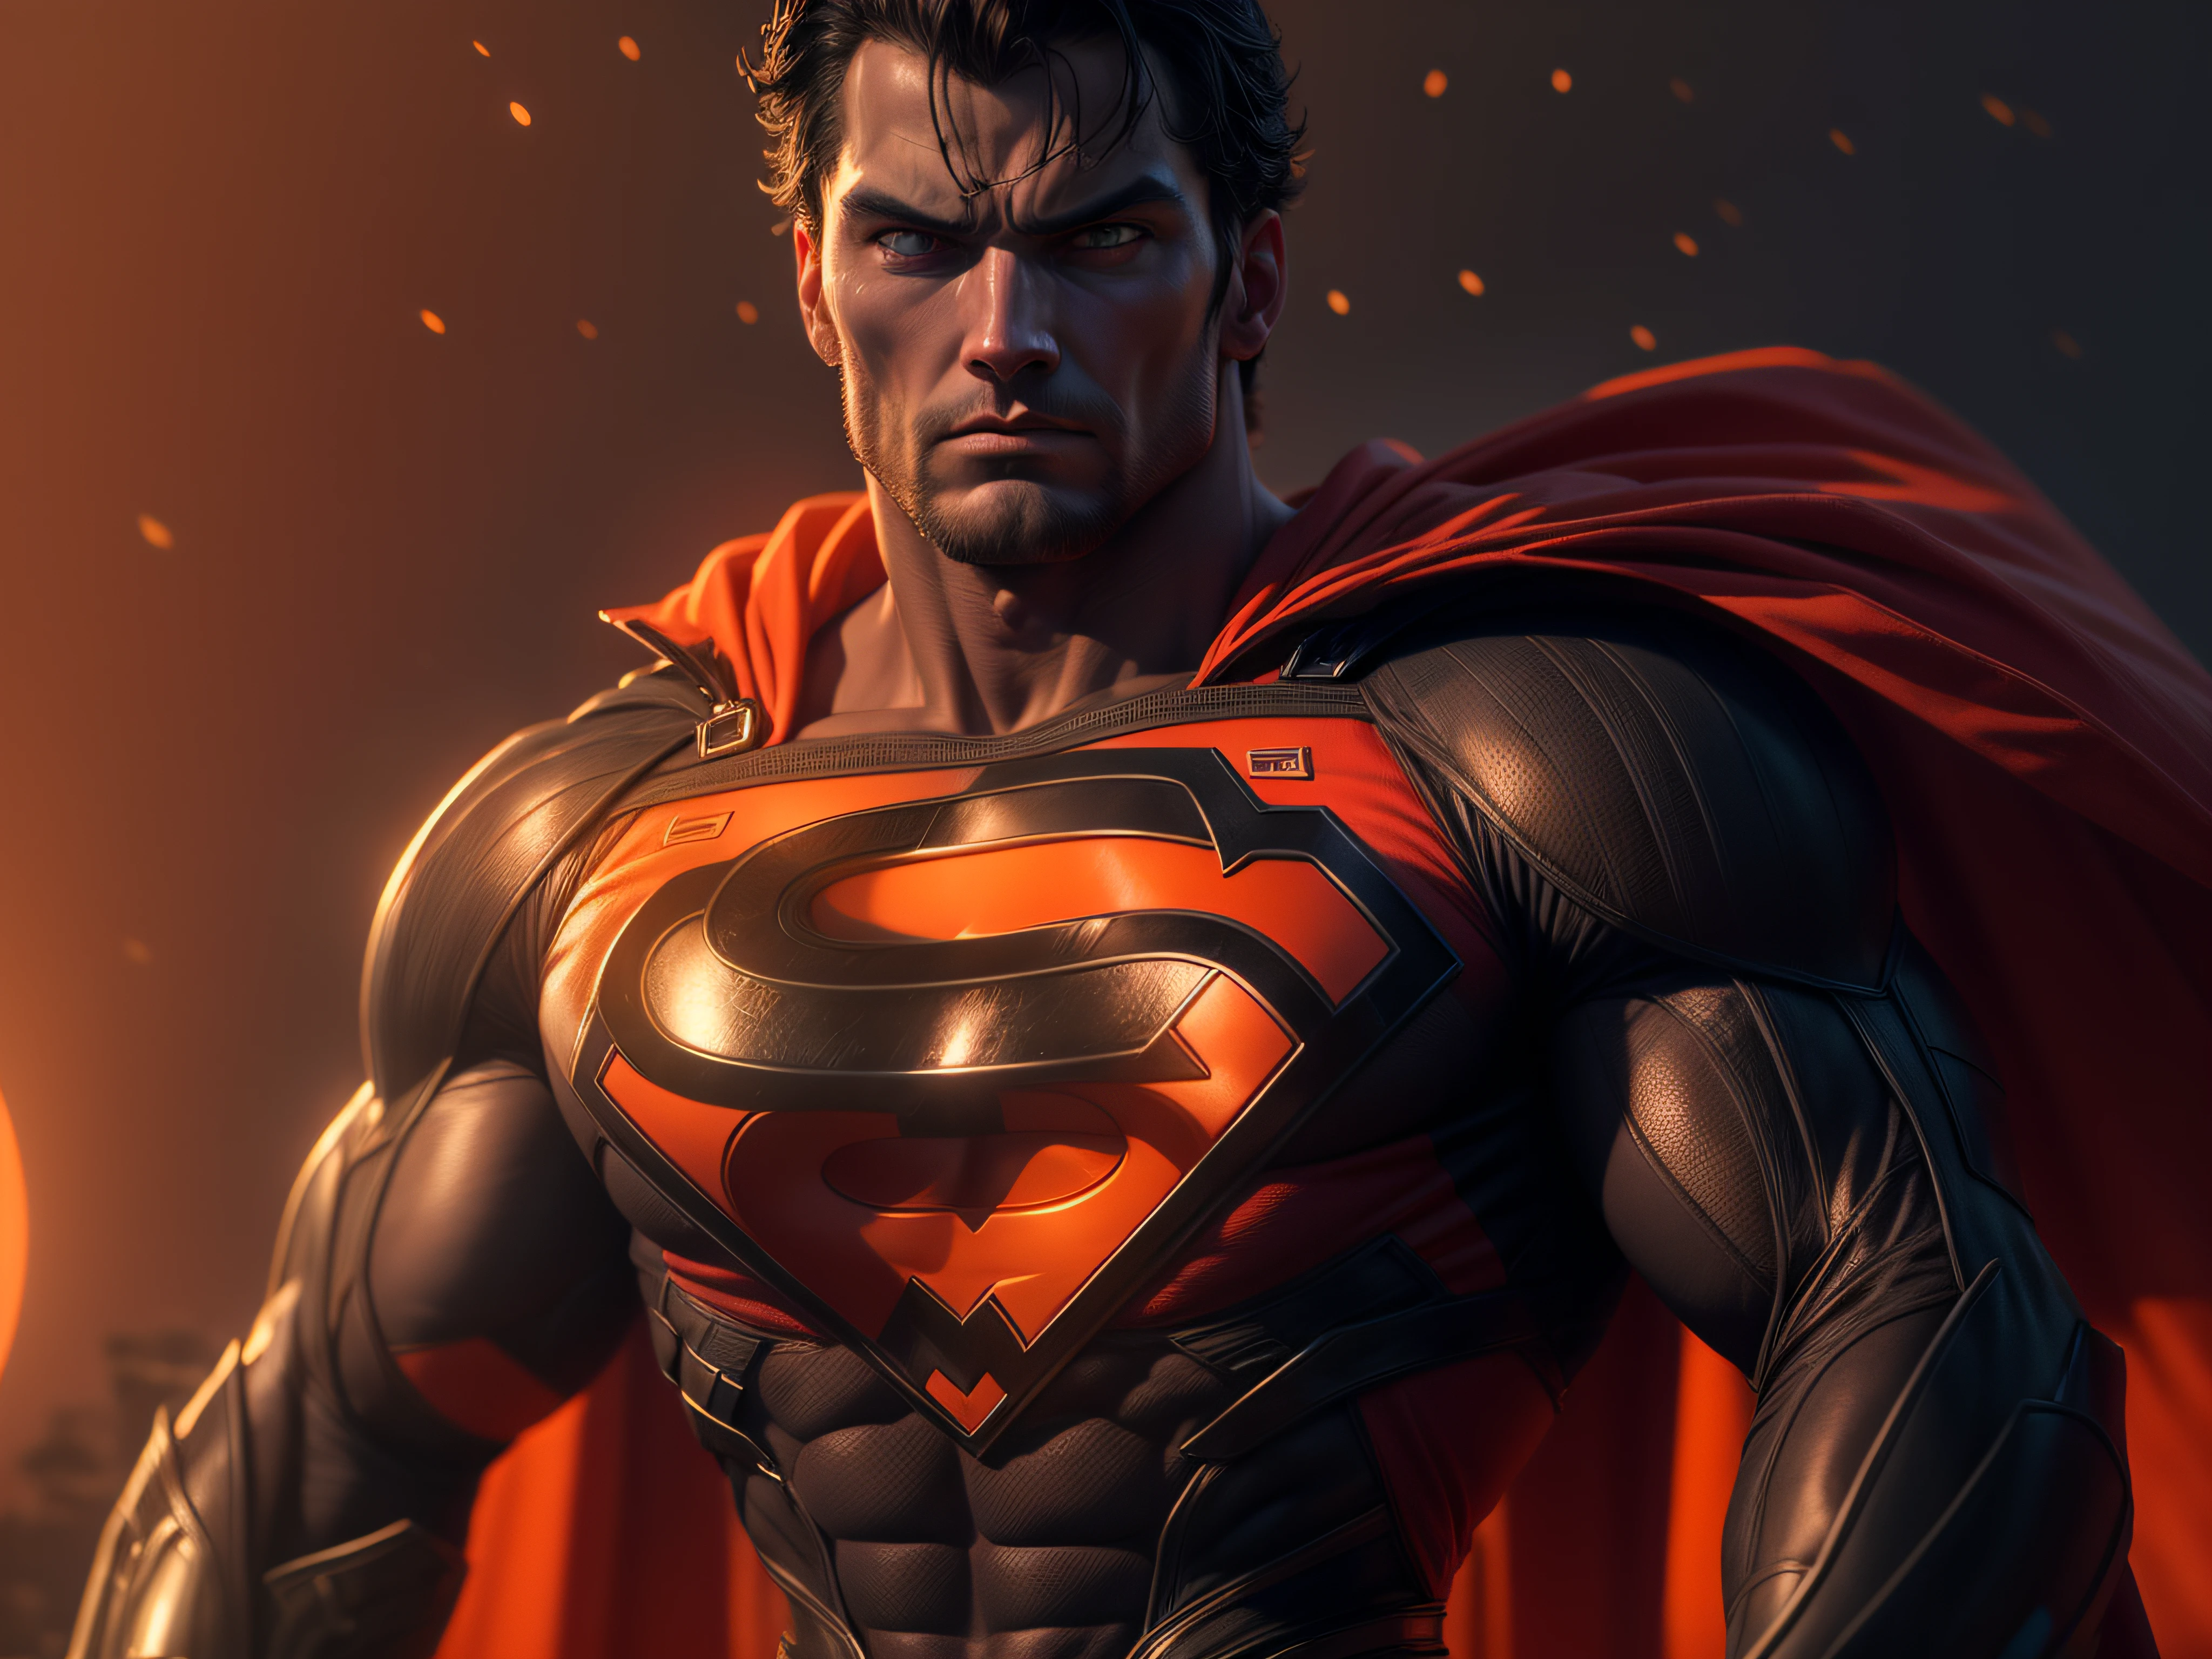 Cerrar una poderosa amenaza, La imponente apariencia del poderoso Superman vestido con uniforme naranja, mirada amenazadora, ricamente detallado, Hiper realista, renderizado 3D, obra-prima, NVIDIA, RTX, trazado de rayos, bokeh, Cielo nocturno con una enorme y hermosa luna llena., estrellas brillantes, 8k,